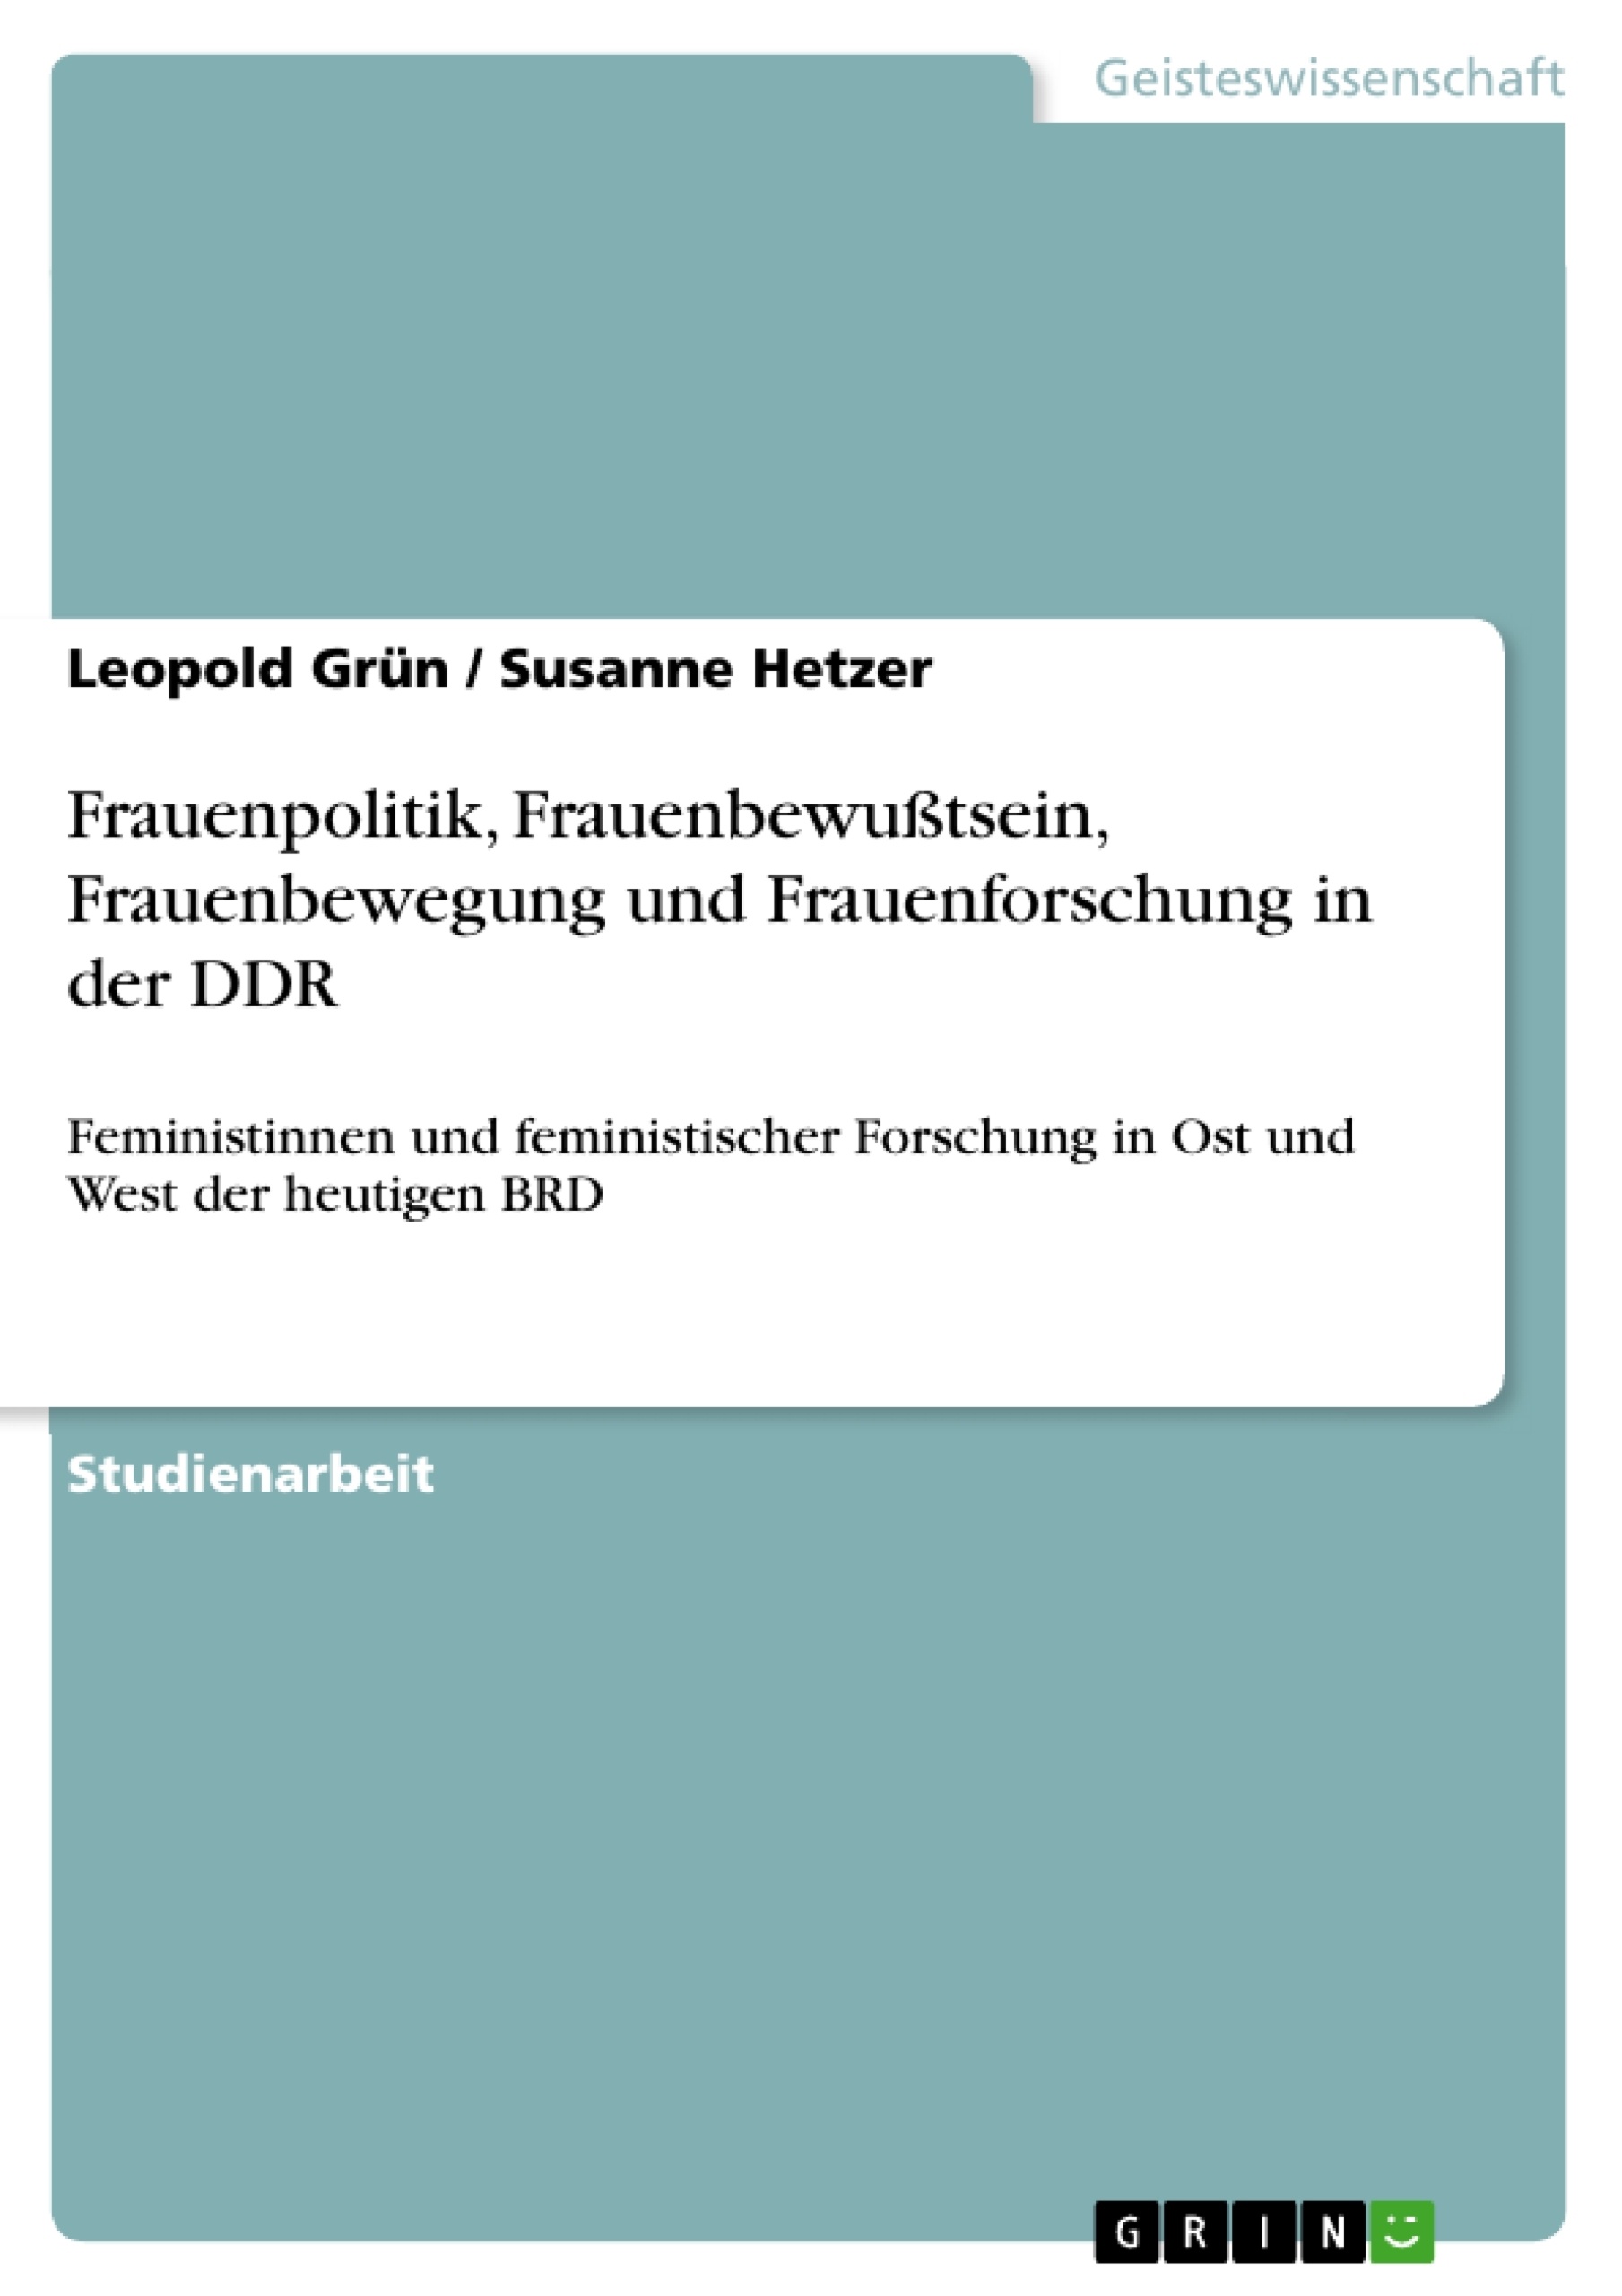 Titel: Frauenpolitik, Frauenbewußtsein, Frauenbewegung und Frauenforschung in der DDR